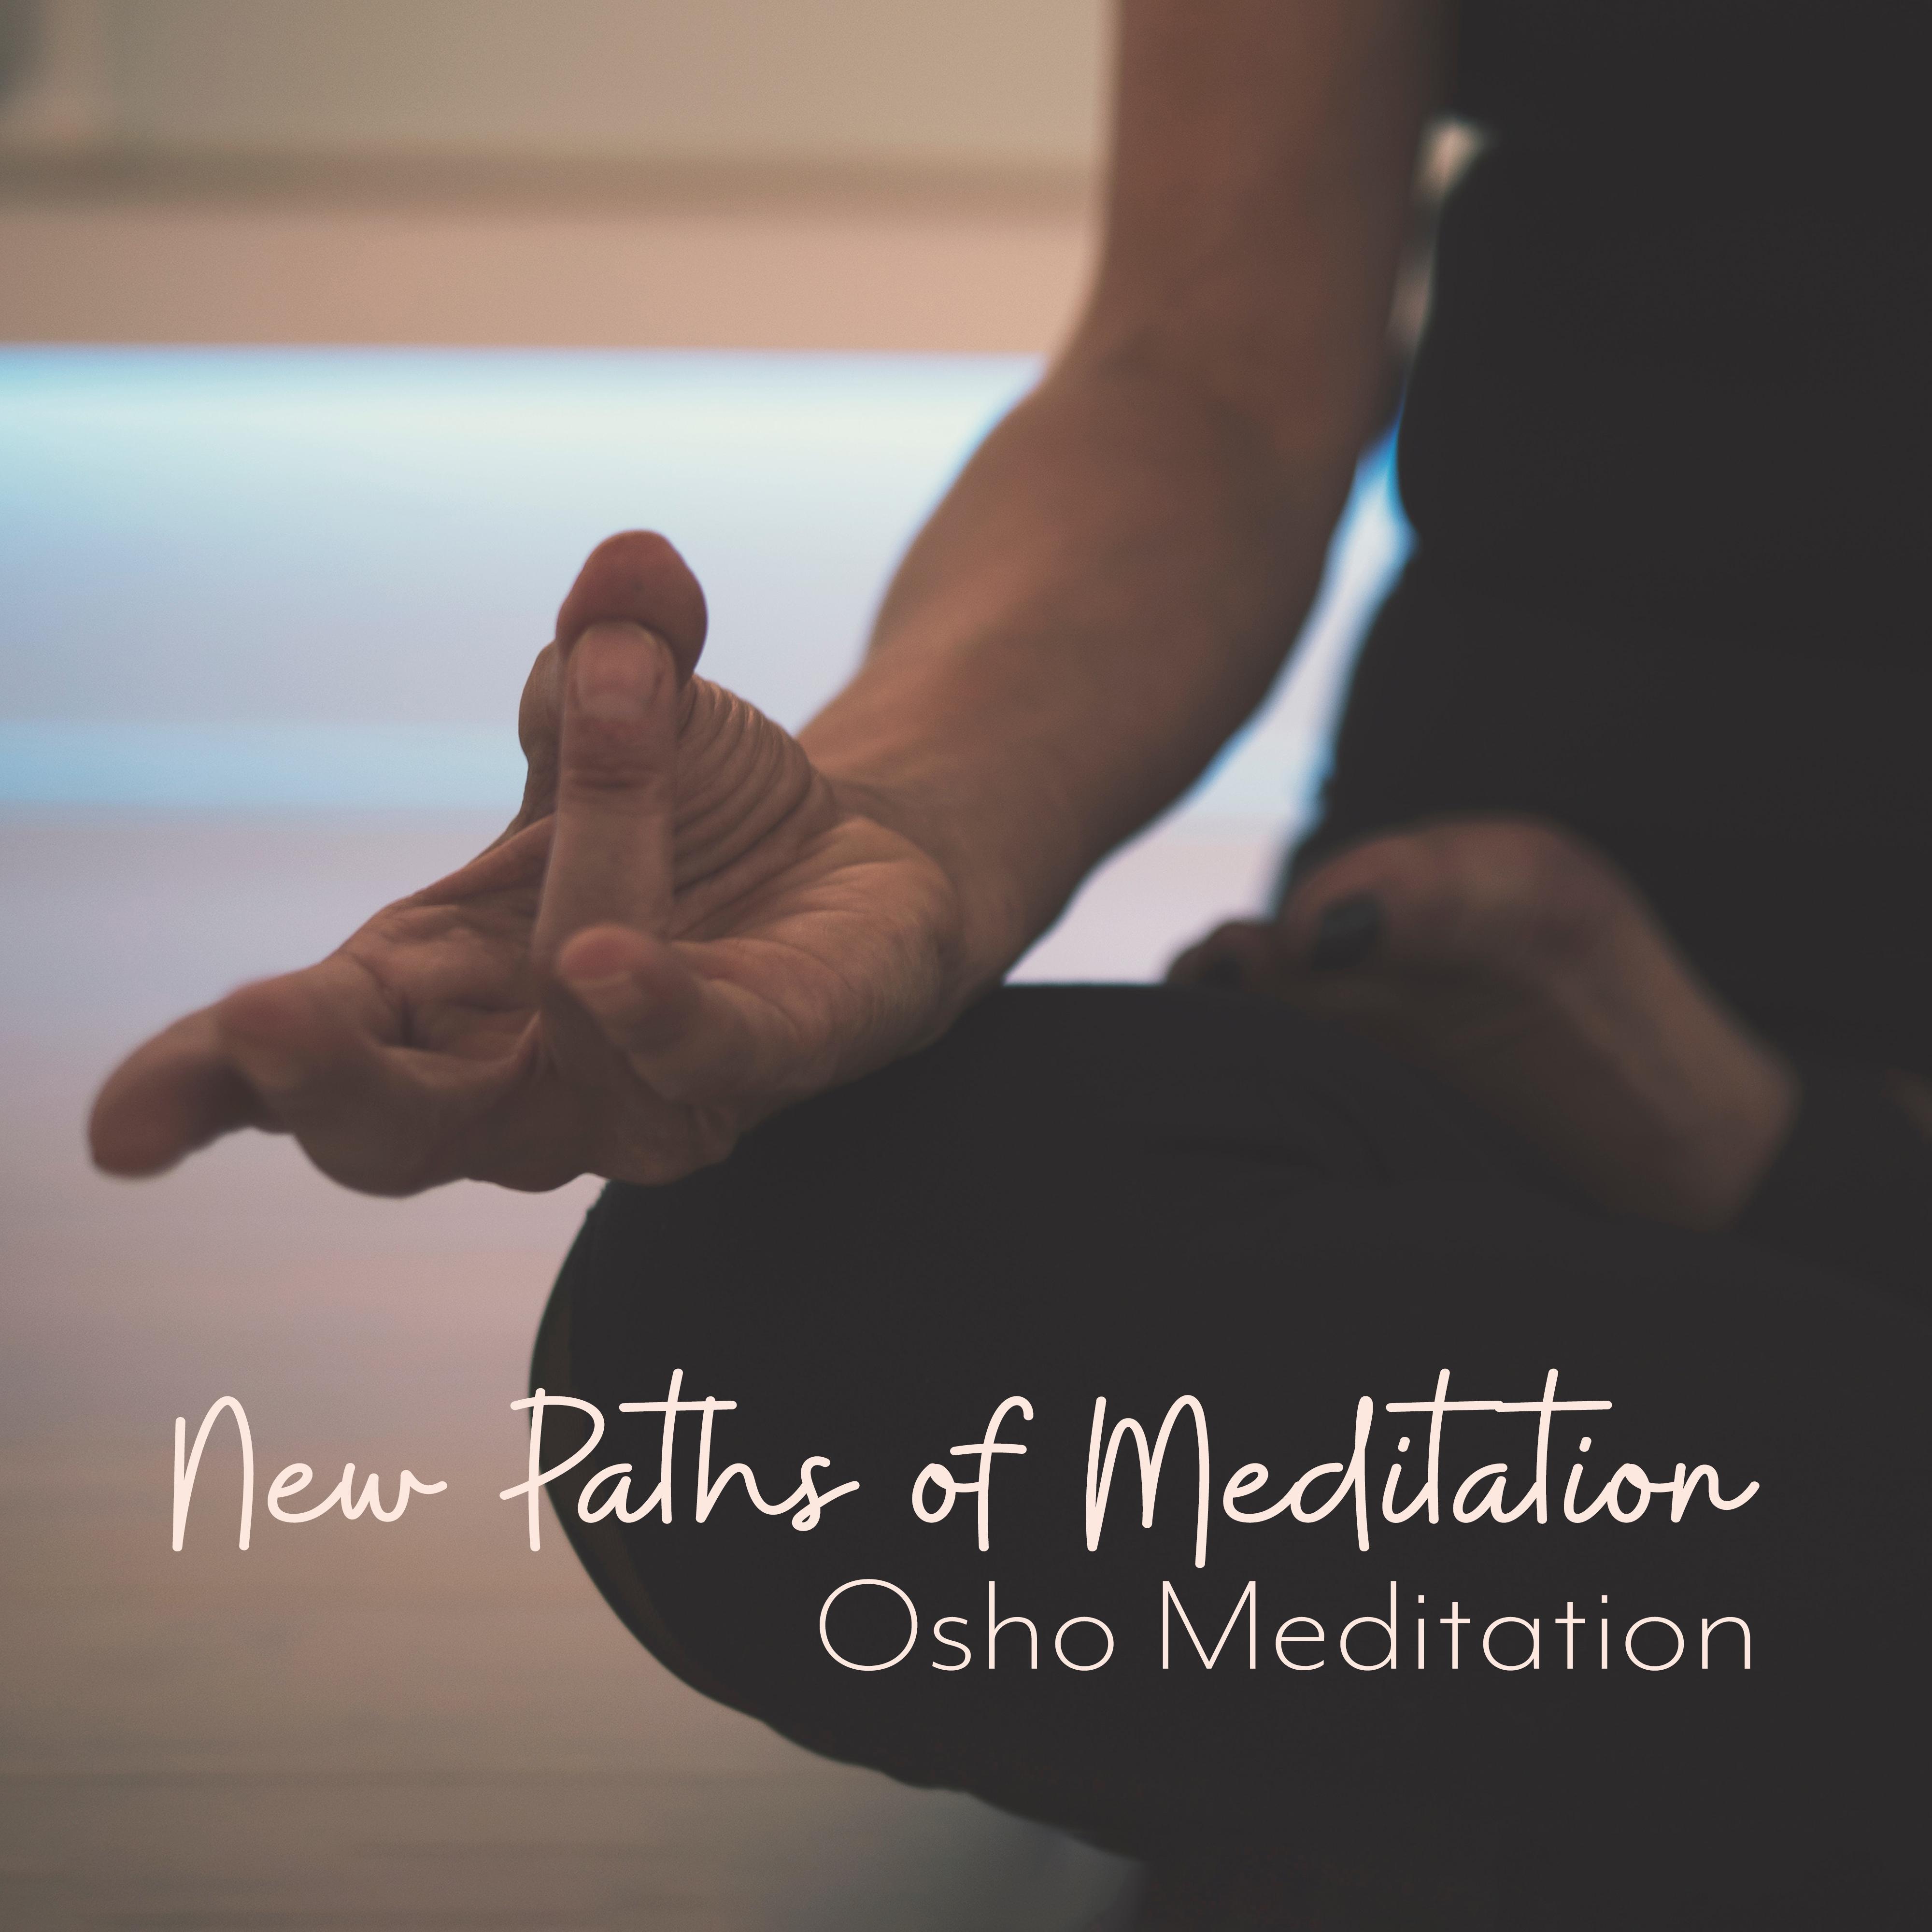 New Paths of Meditation - Osho Meditation